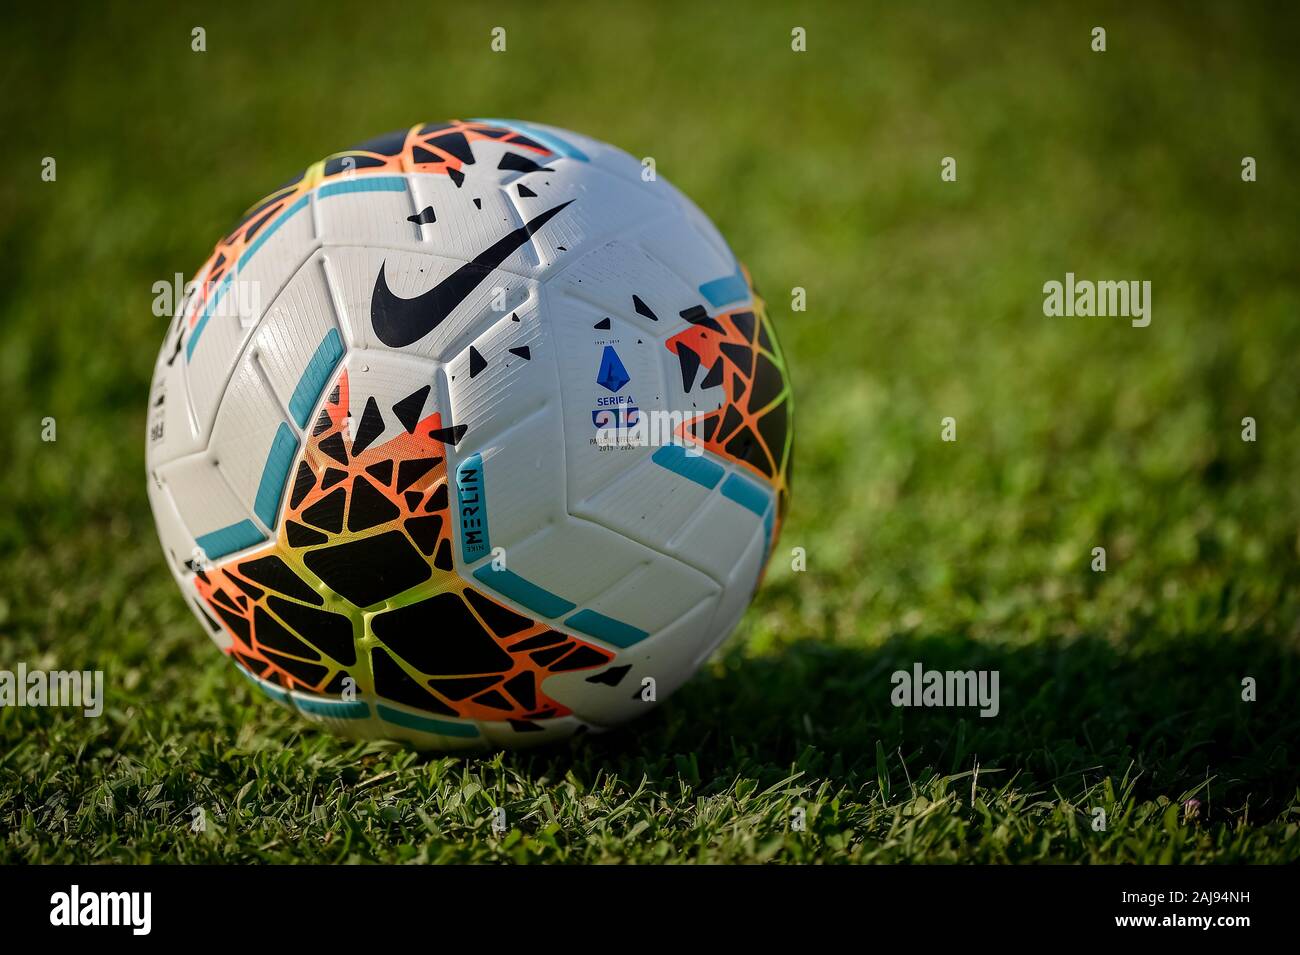 Mantua, Italia. El 10 de agosto, 2019: La Serie 2019-2020 oficial un balón  Nike Merlin es retratada antes de la pre-temporada de fútbol amistoso entre  Brescia y el Real Valladolid CF. Brescia